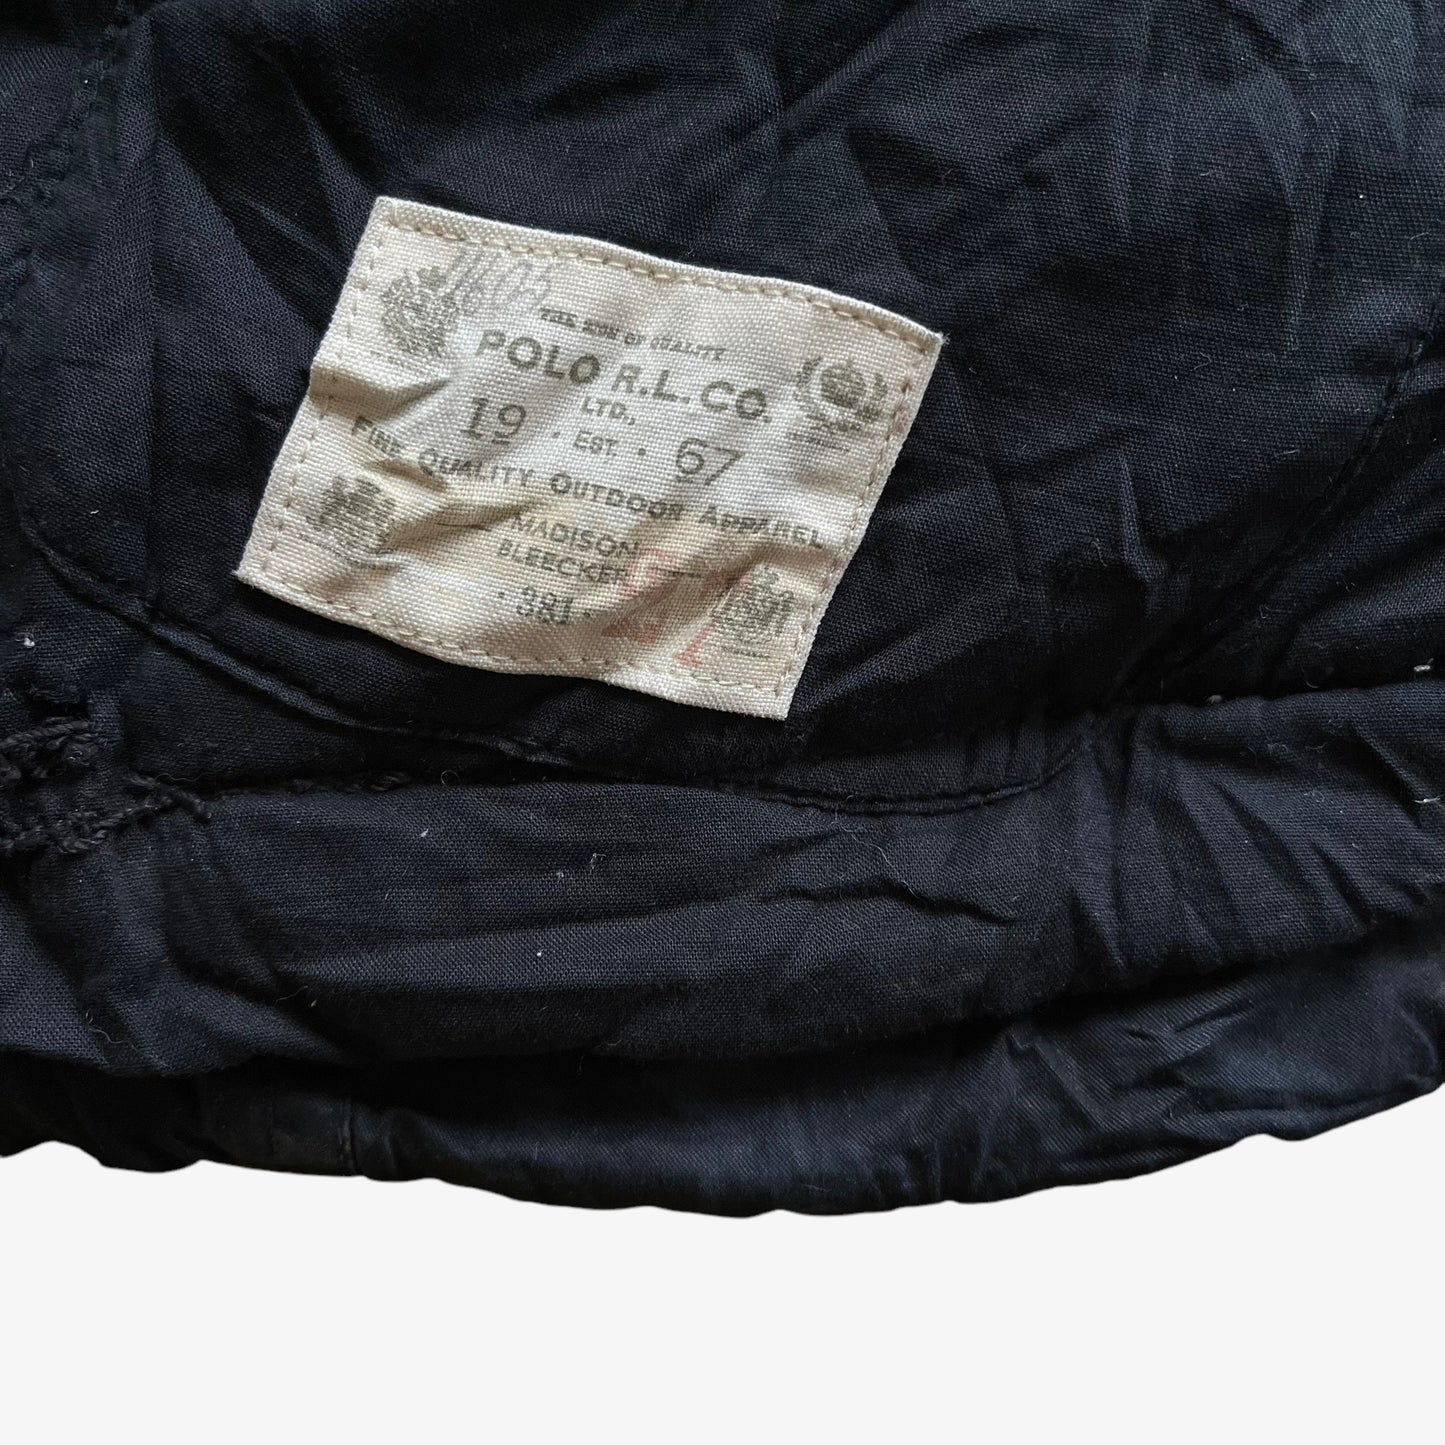 Vintage 90s Polo Ralph Lauren Black Utility Jacket Inside Label - Casspios Dream